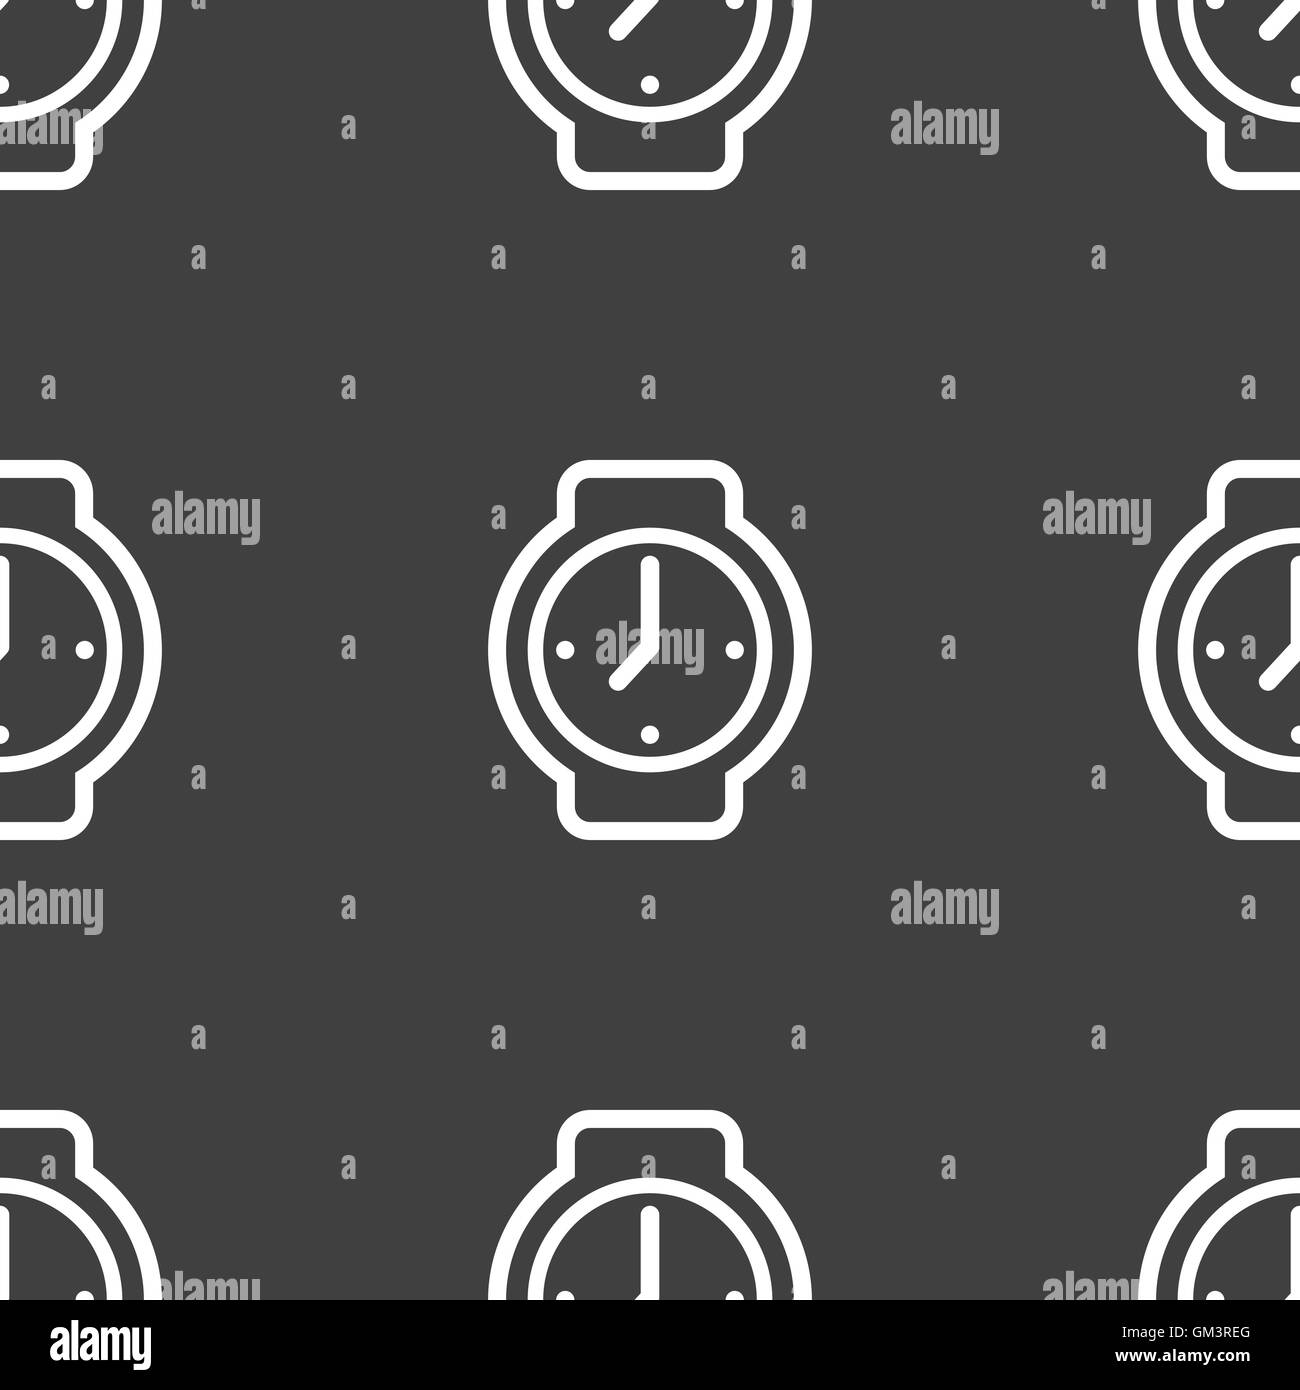 Uhren Symbol Zeichen. Nahtlose Muster auf einem grauen Hintergrund. Vektor Stock Vektor